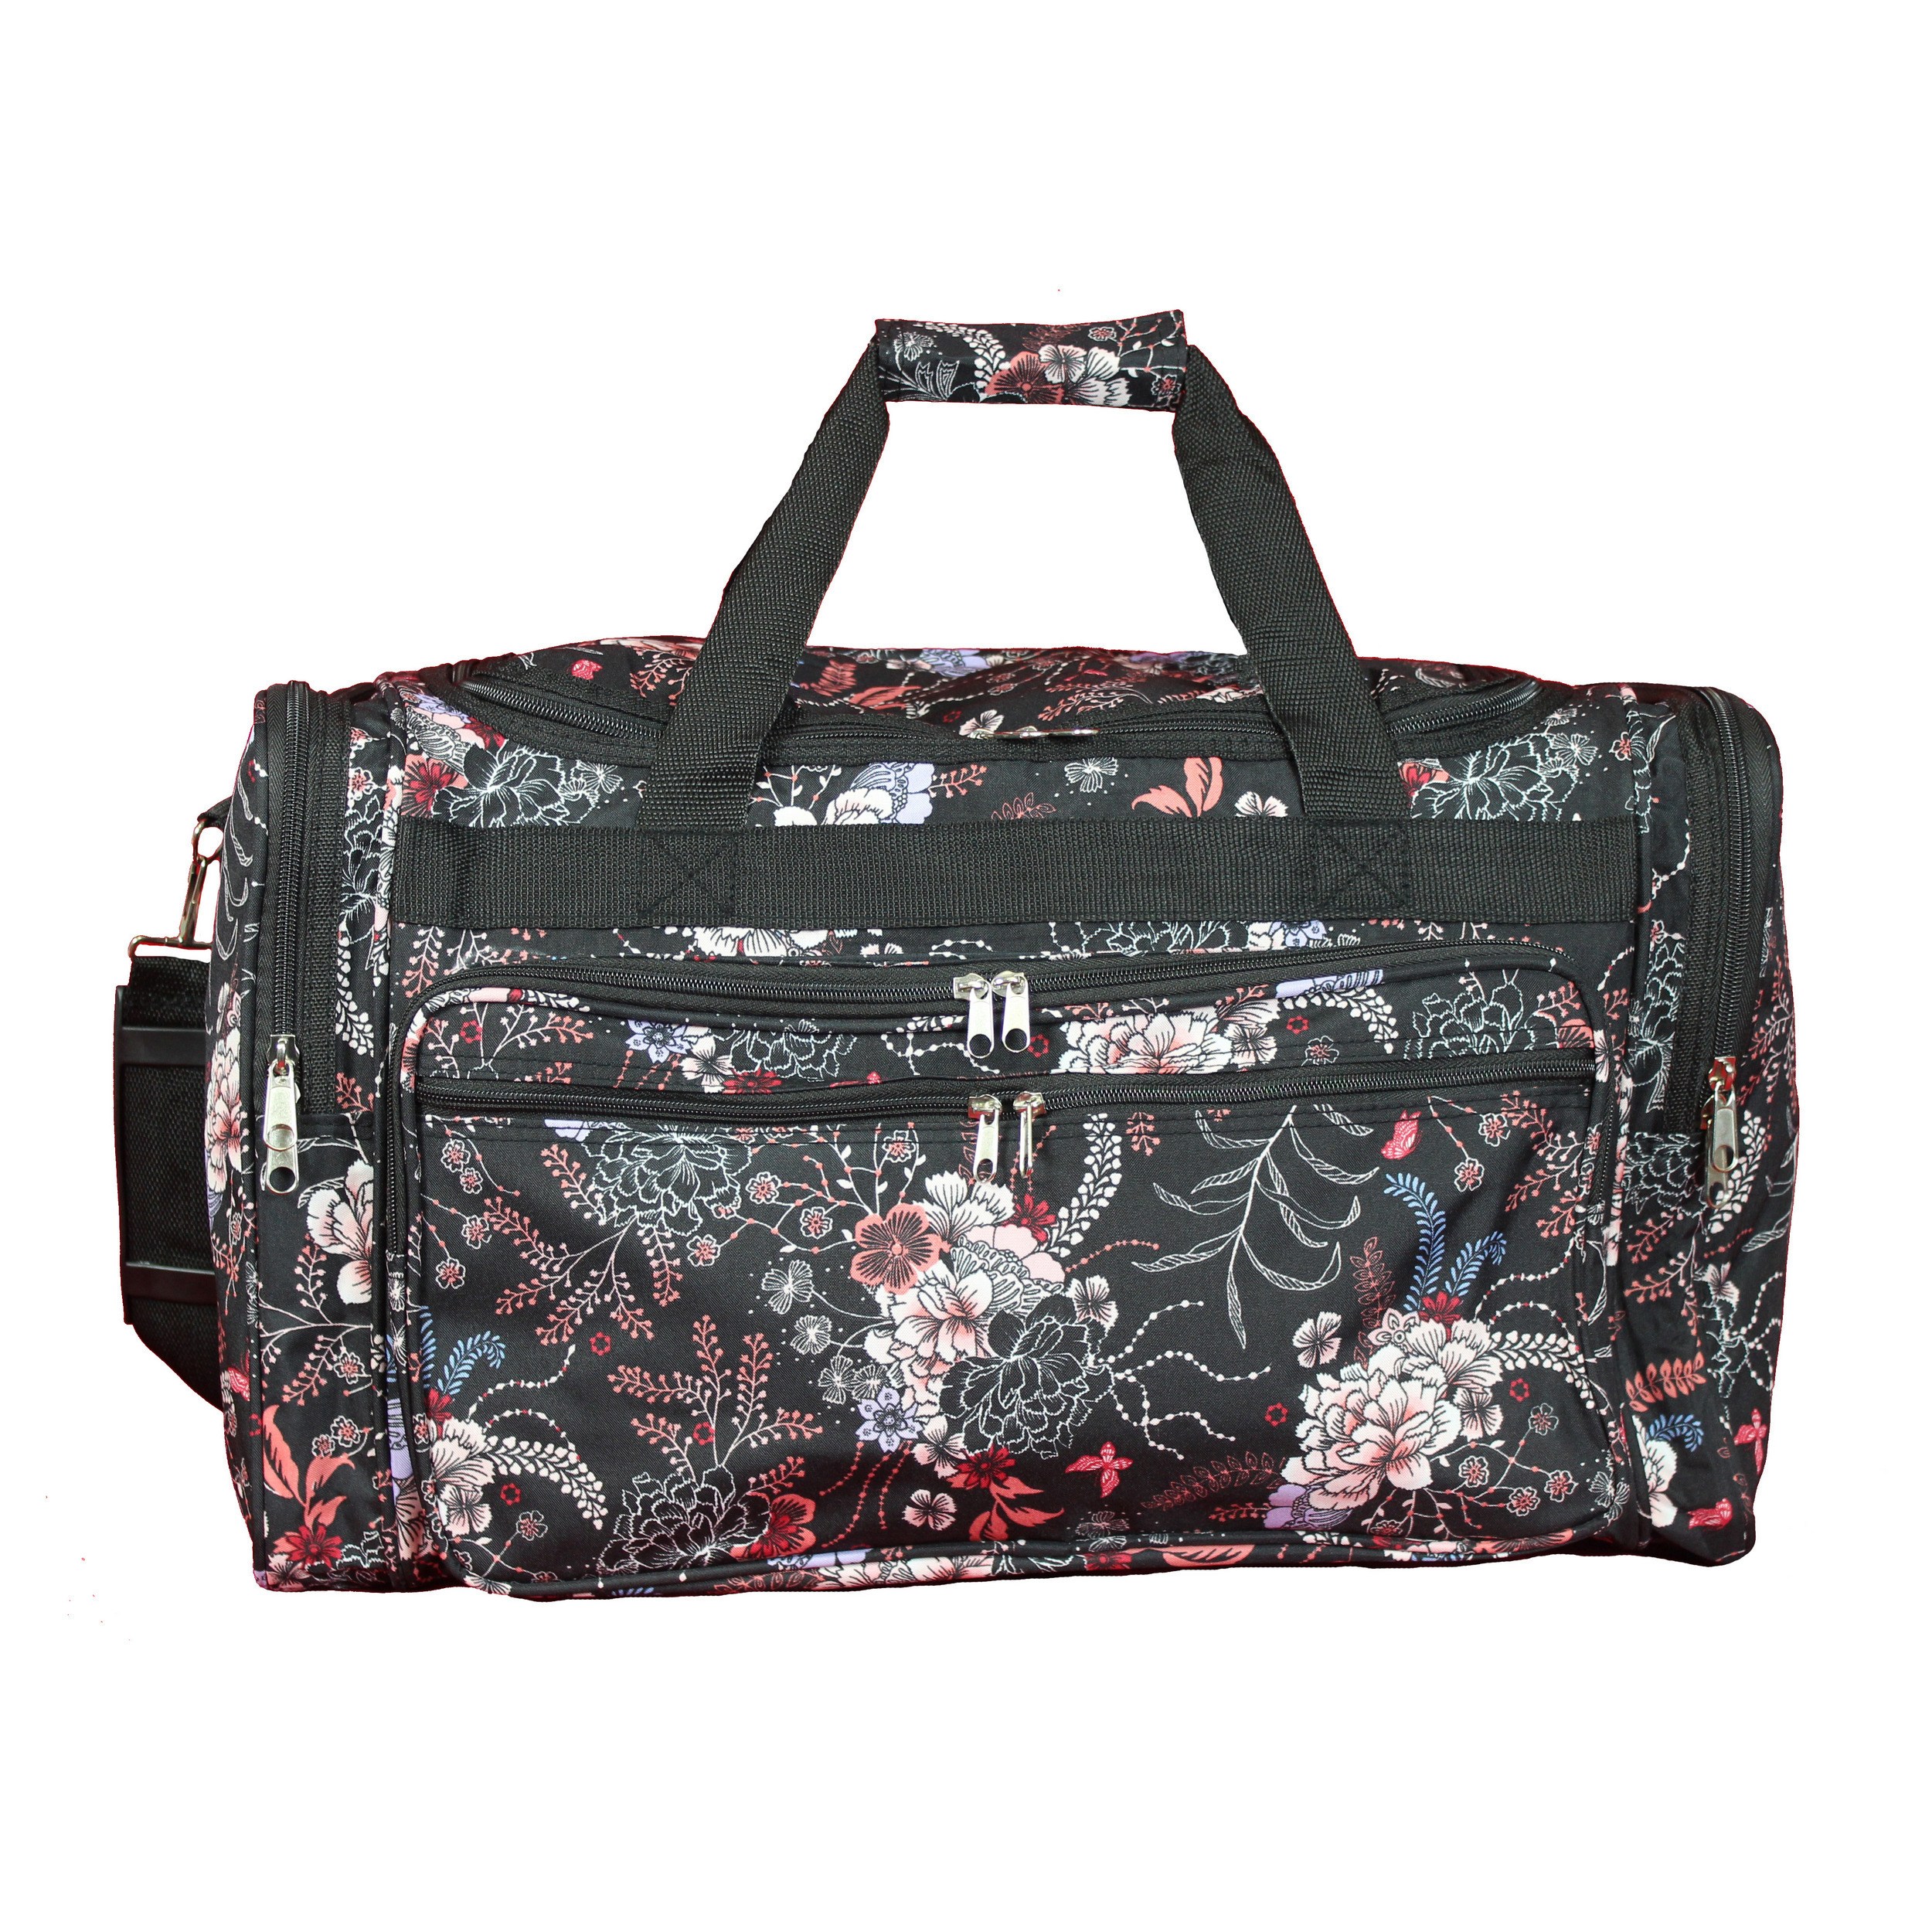 World Traveler 22-inch Travel Duffel Bag - Flower Bloom - image 2 of 2